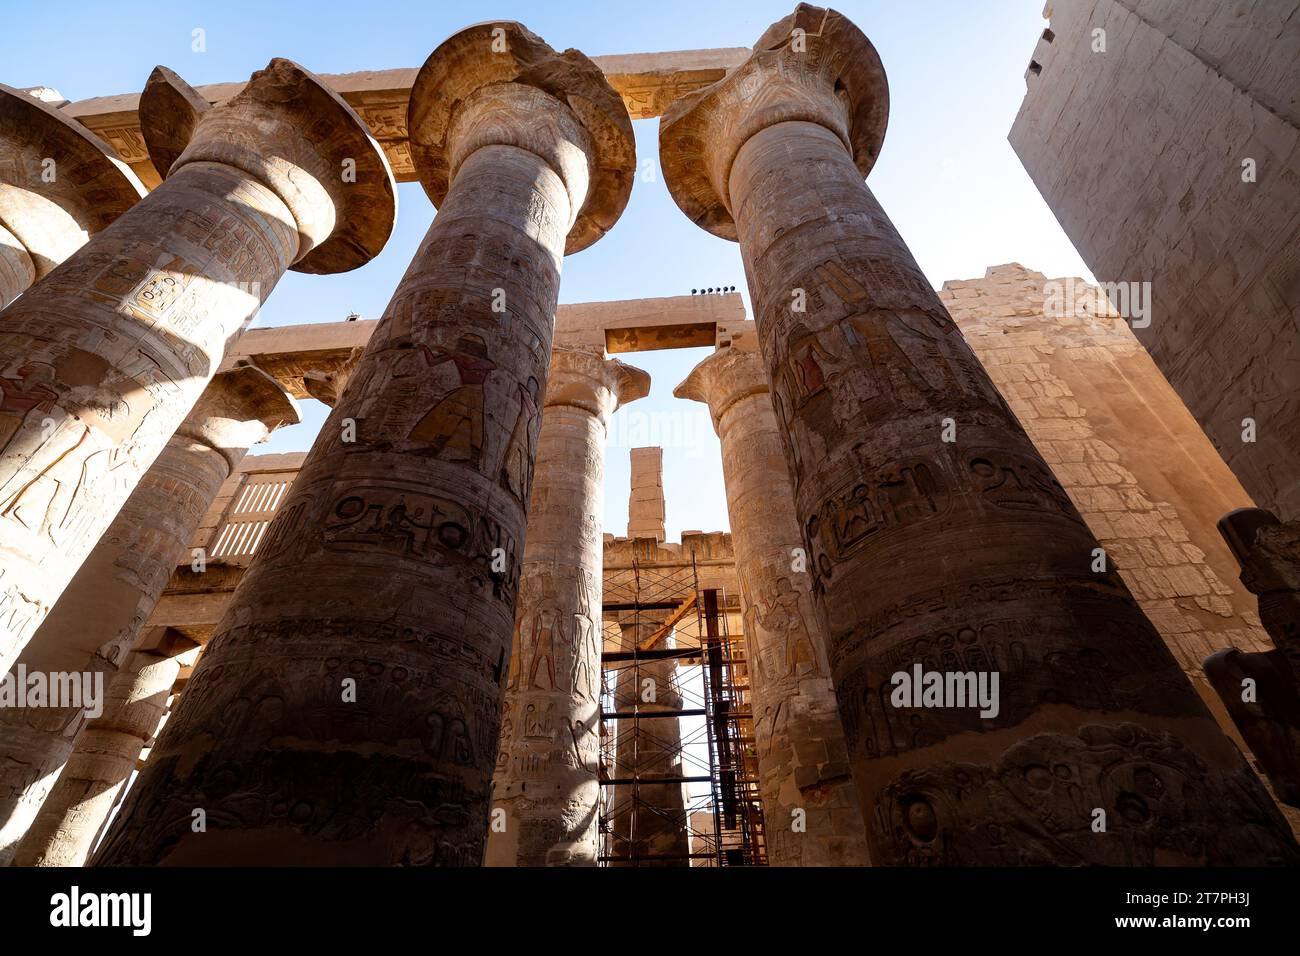 Reliefs hiéroglyphiques sur les colonnes géantes des ruines antiques du complexe du temple de Karnak dans la ville désertique égyptienne de Louxor Banque D'Images